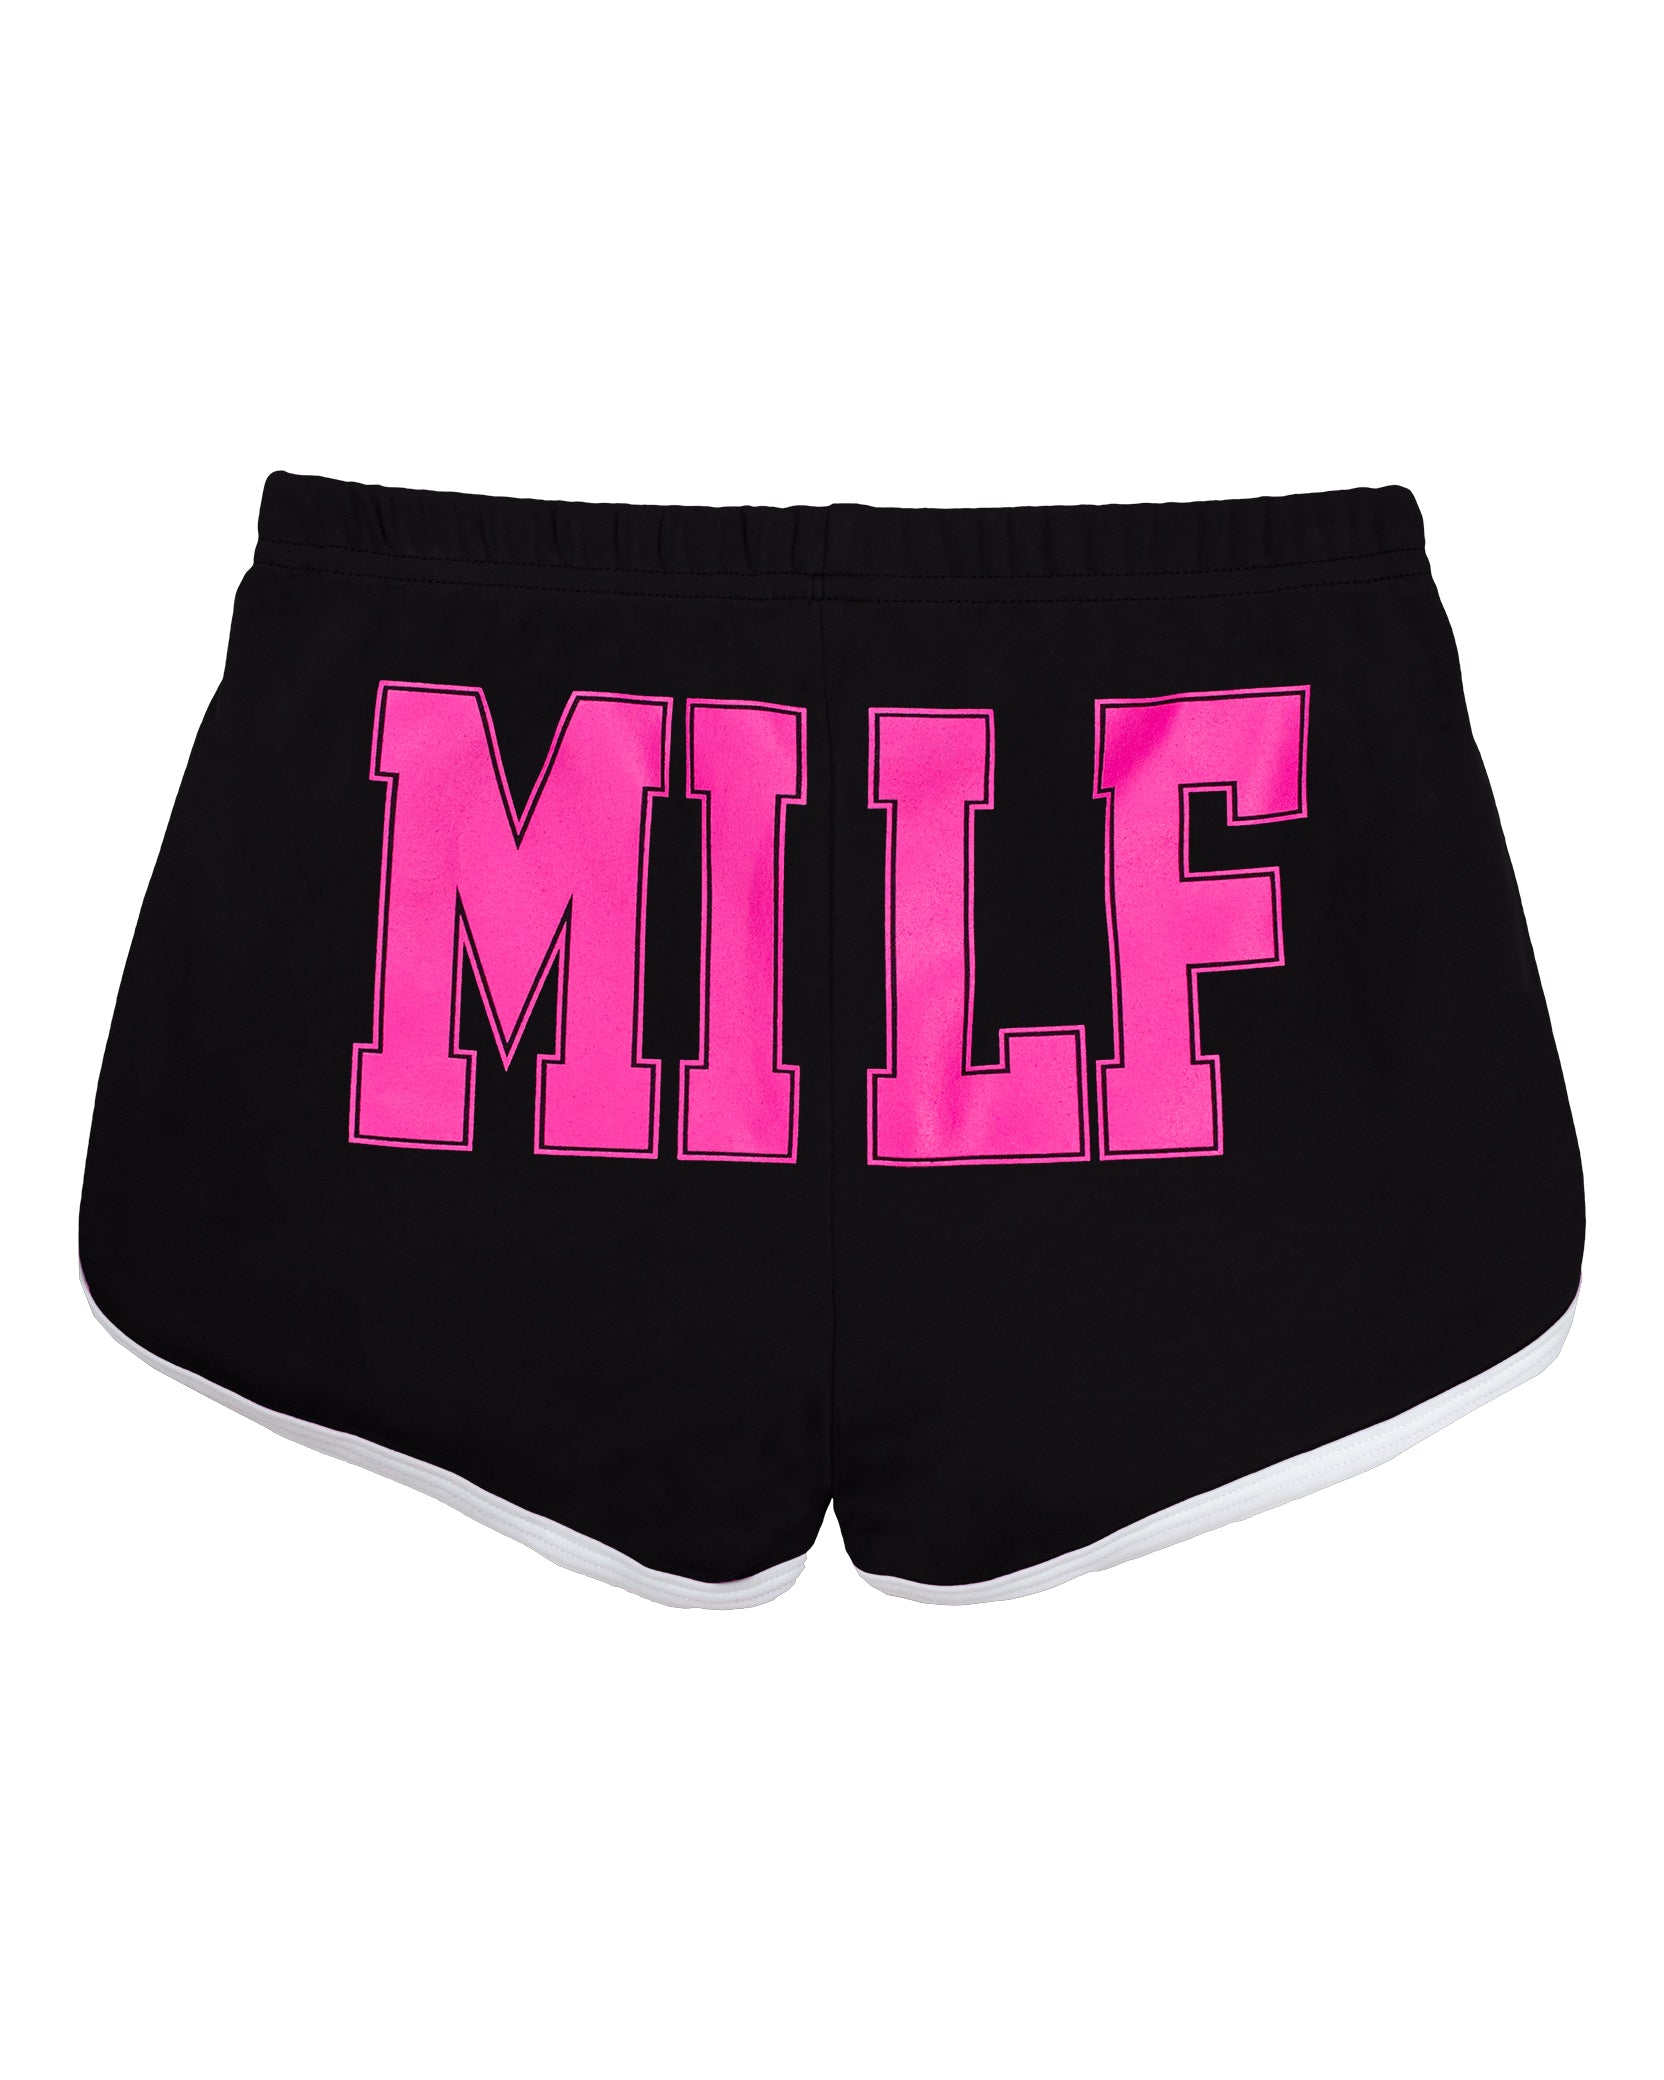 MlLF Running Shorts - Black